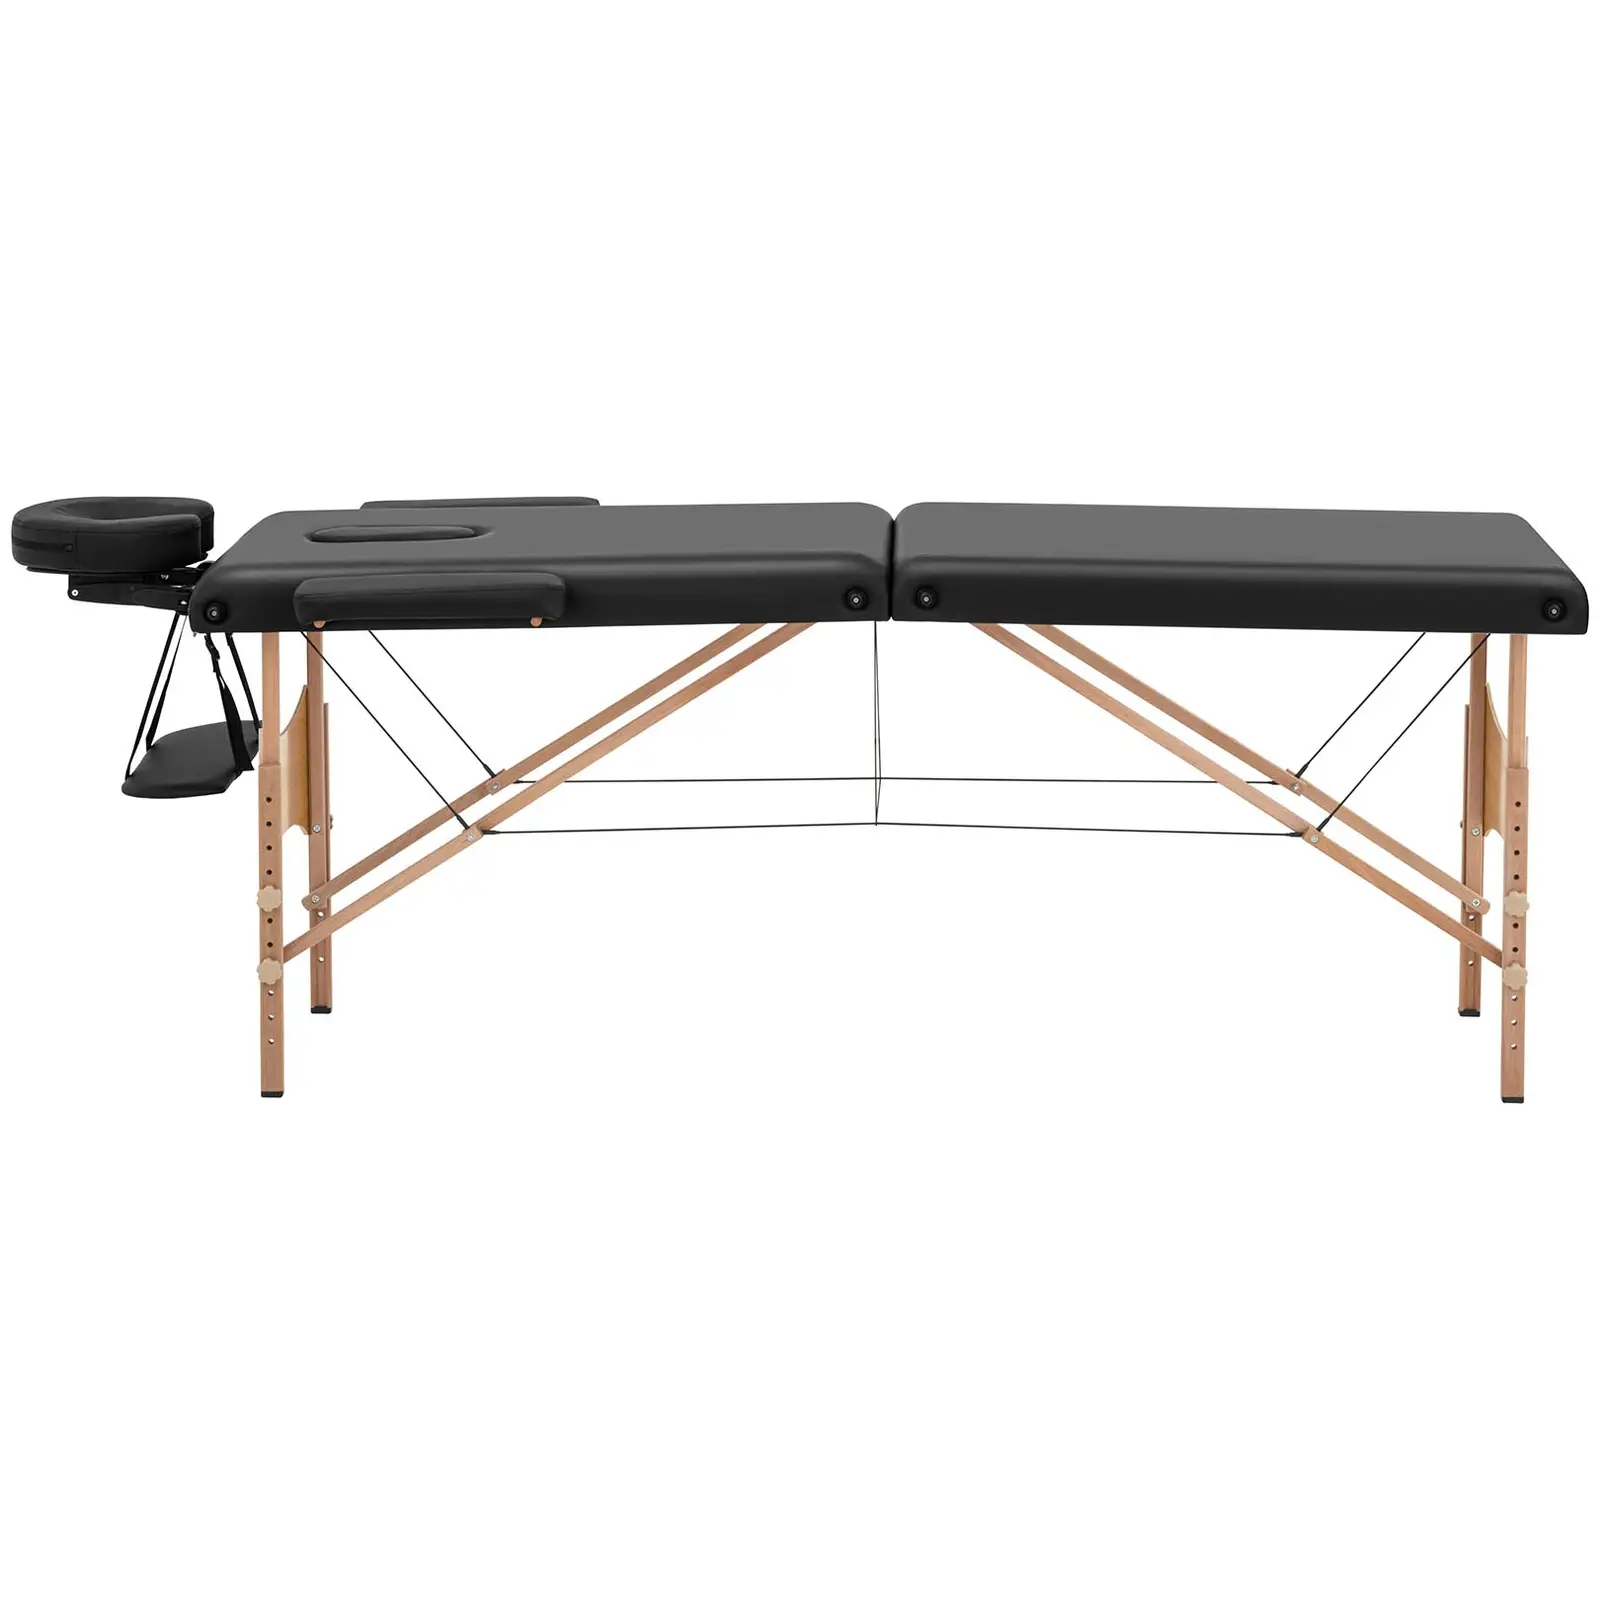 Cama de massagem - portátil - 185 x 60 x 62 cm - 227 kg - Preto